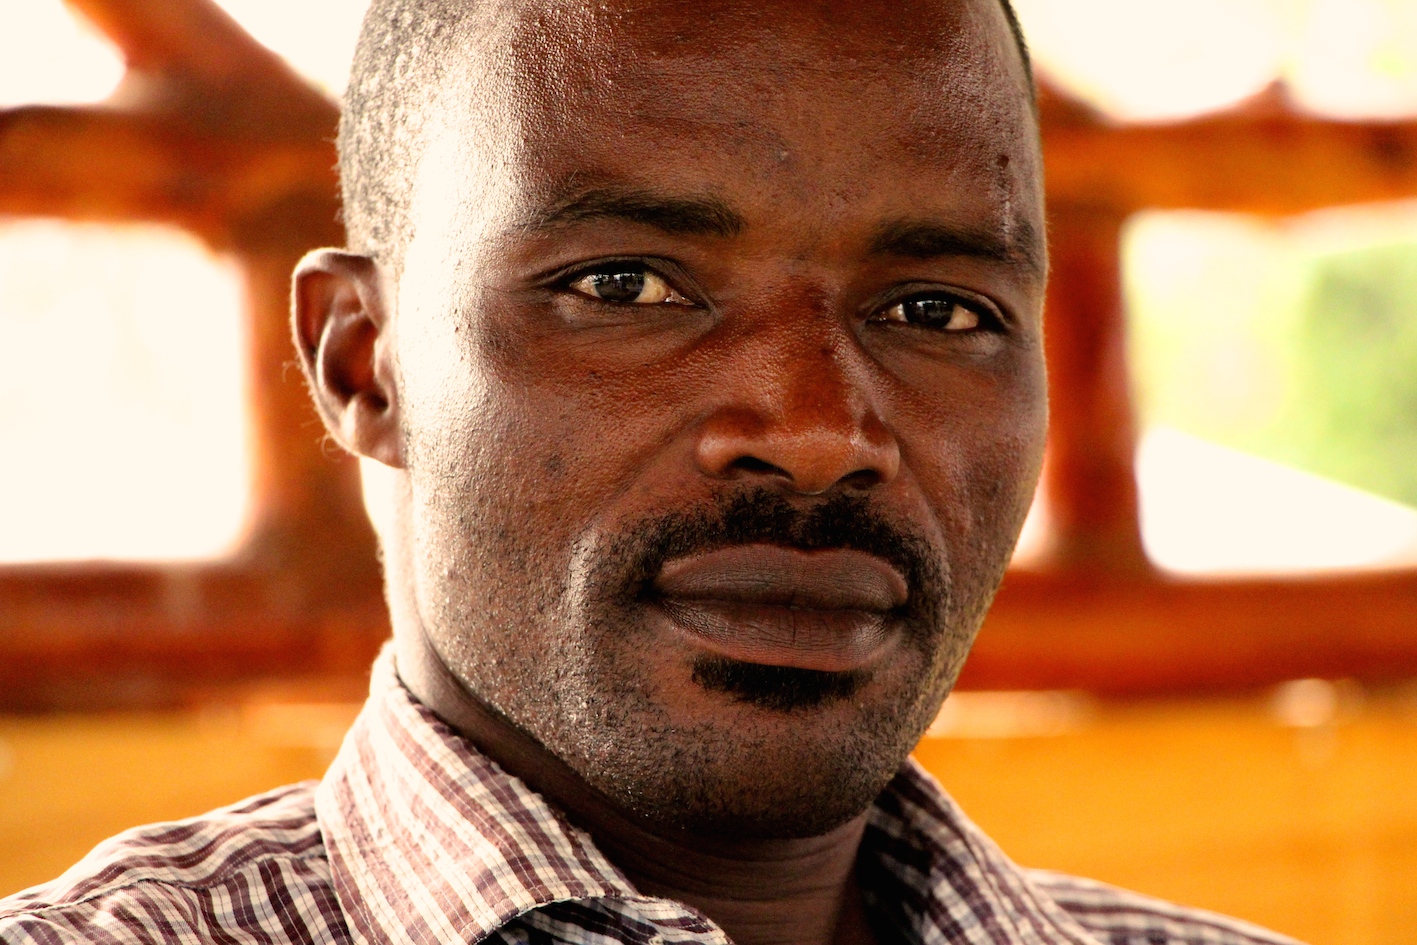 Samuel Mukami Mwita sier han vet om så mange som 70 personer som har blitt drept utenfor gullgruven de siste to årene. Foto: Kenneth Lia Solberg